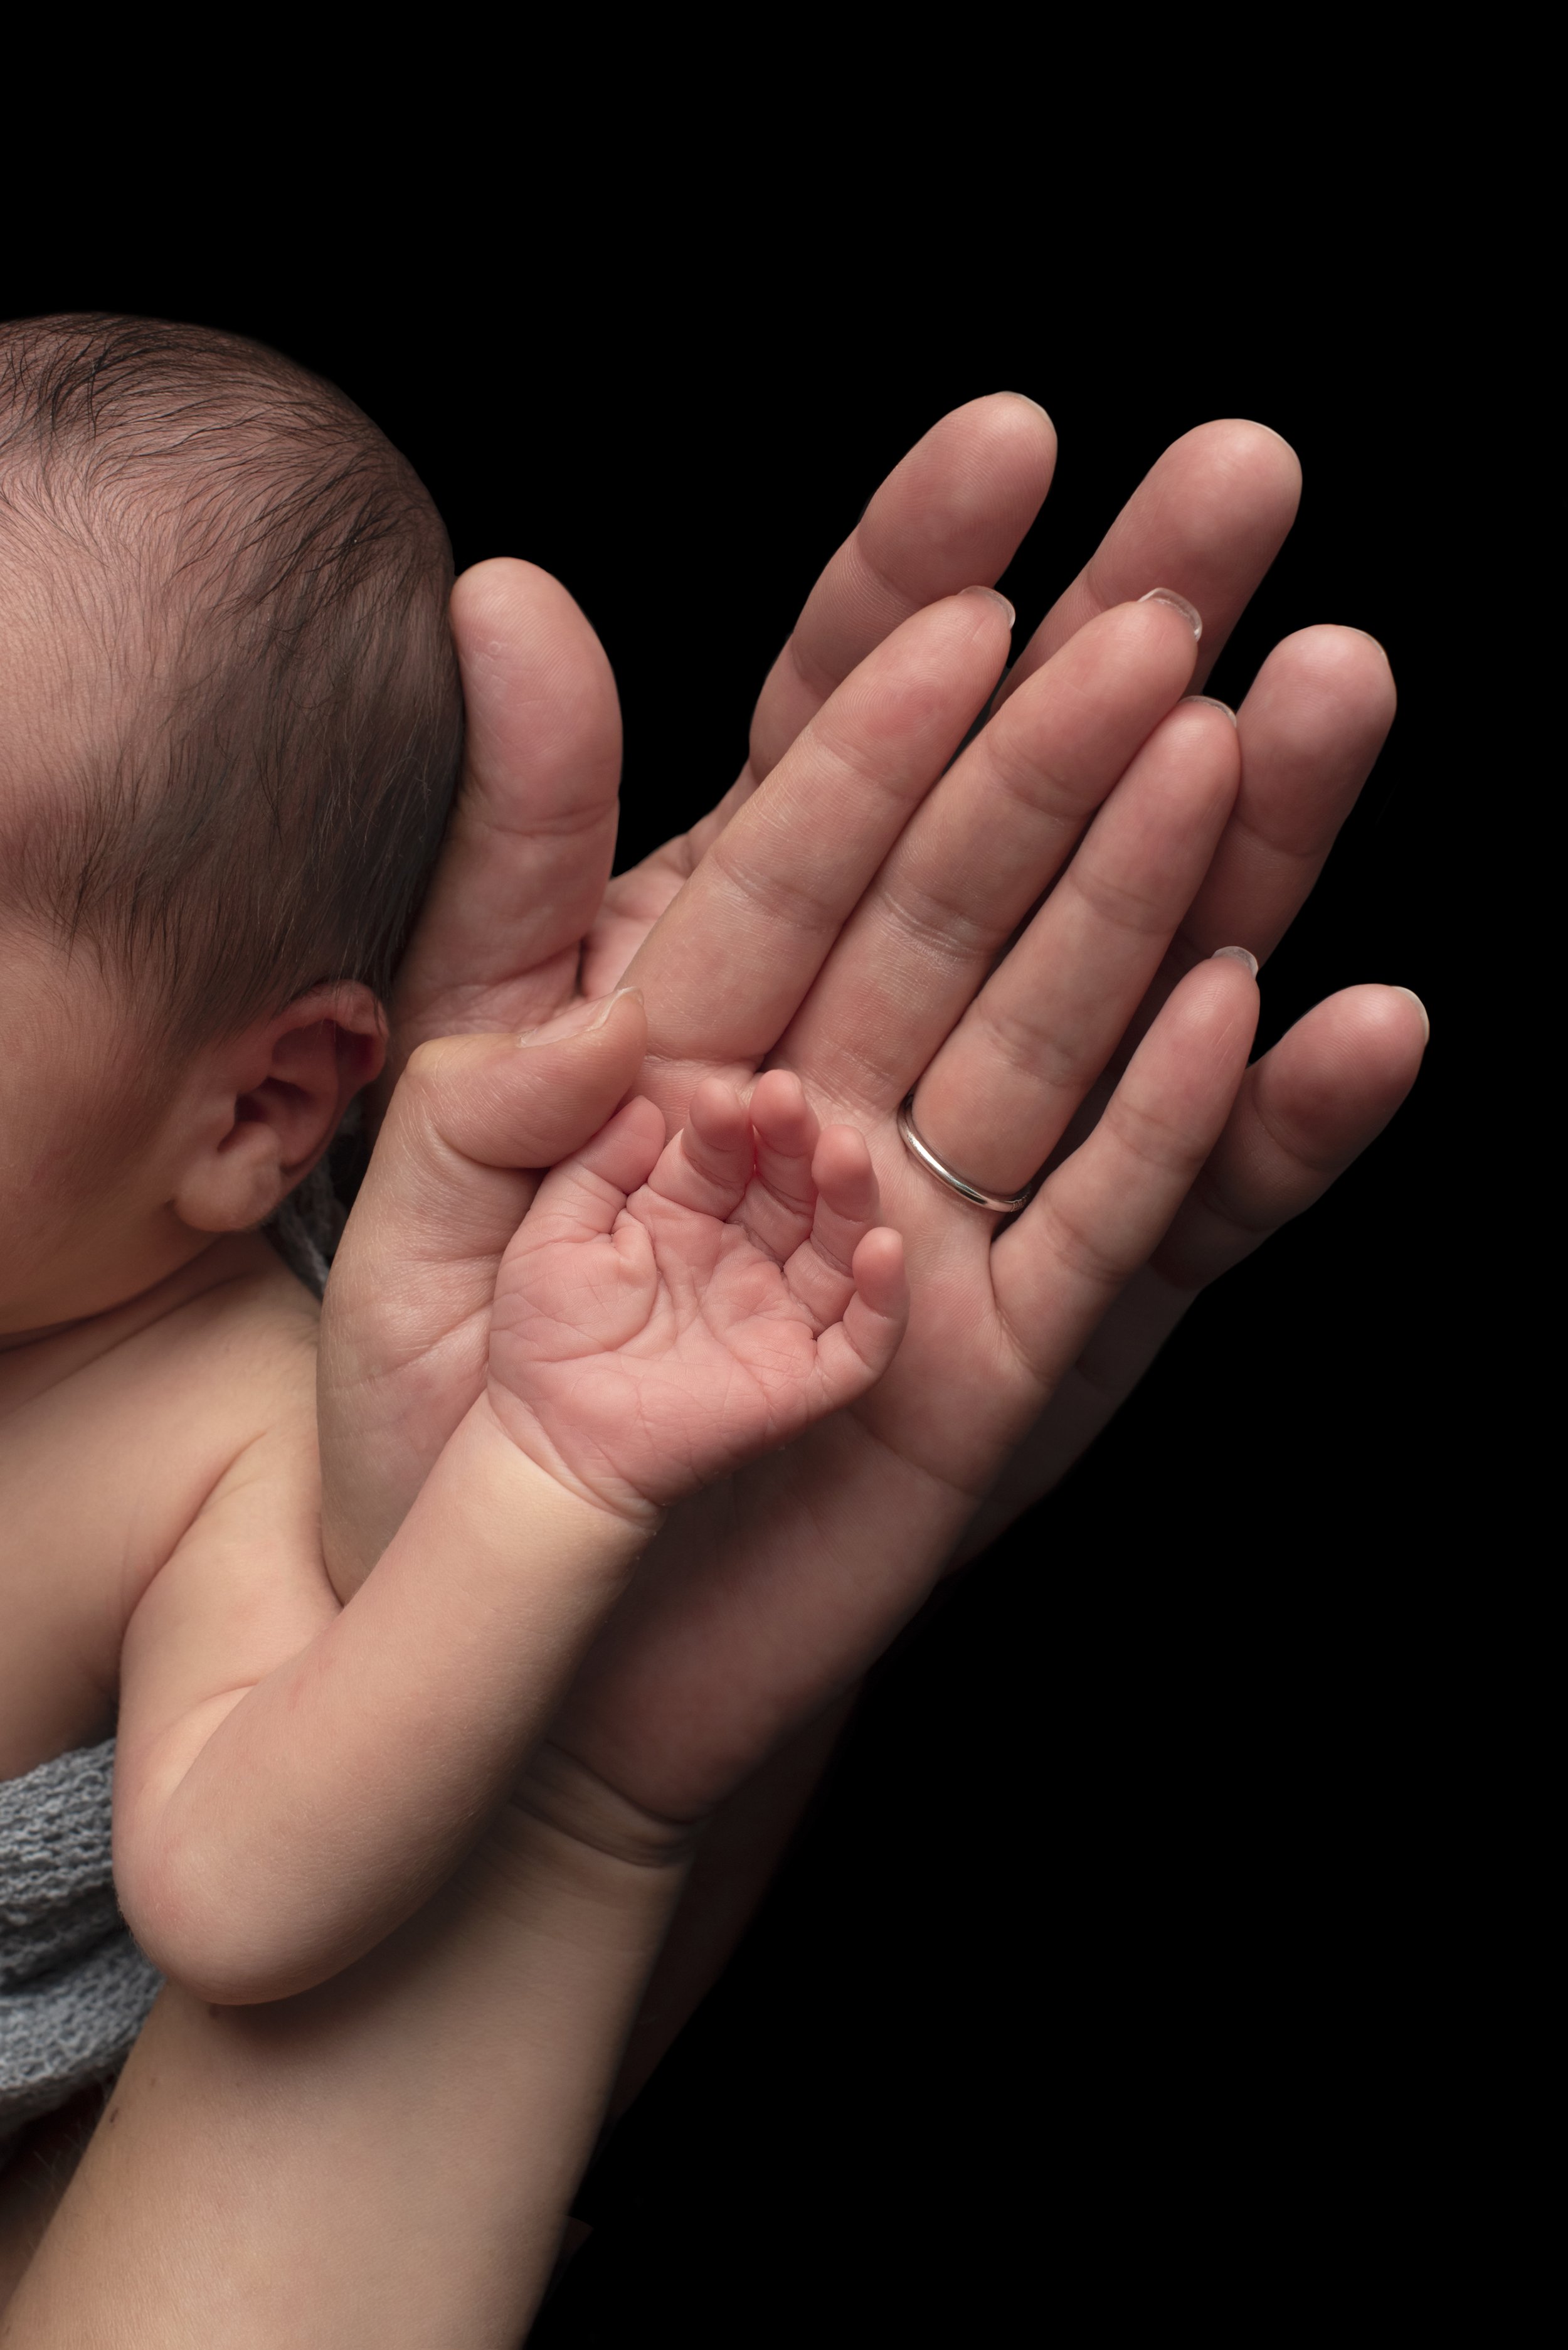 newborn baby family hands